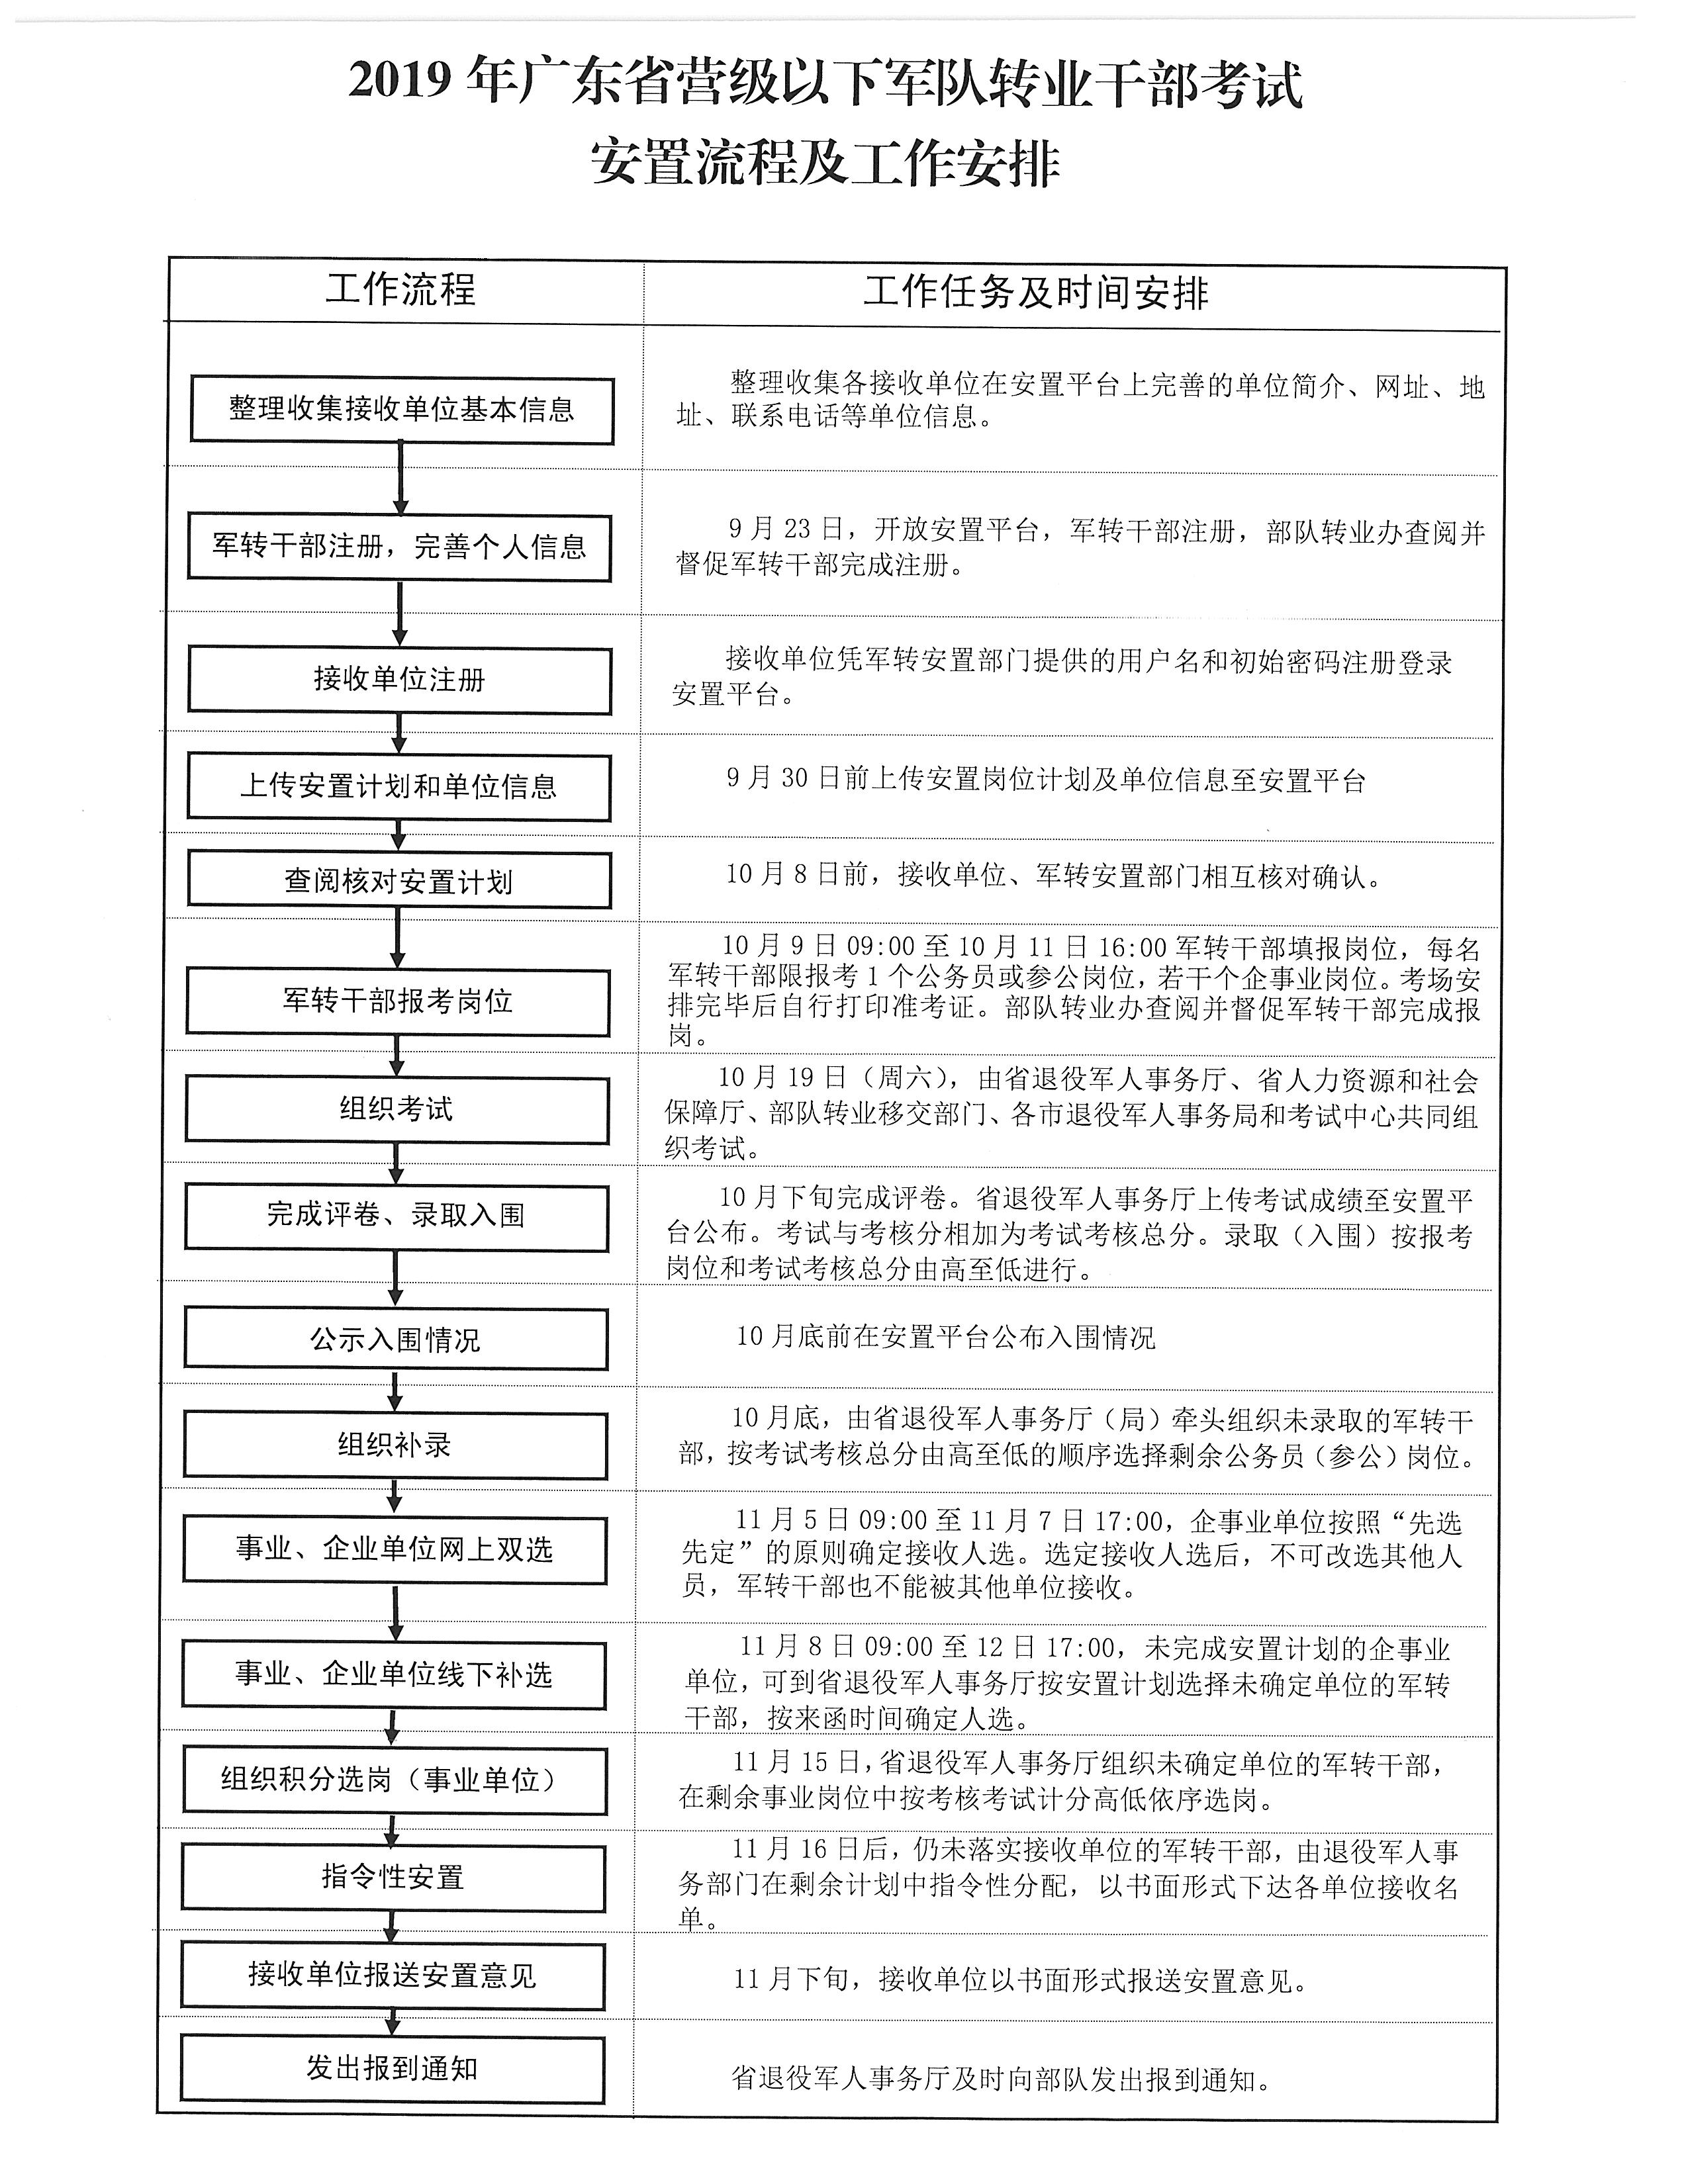 2019年广东省营级以下军队转业干部考试安置流程及工作安排